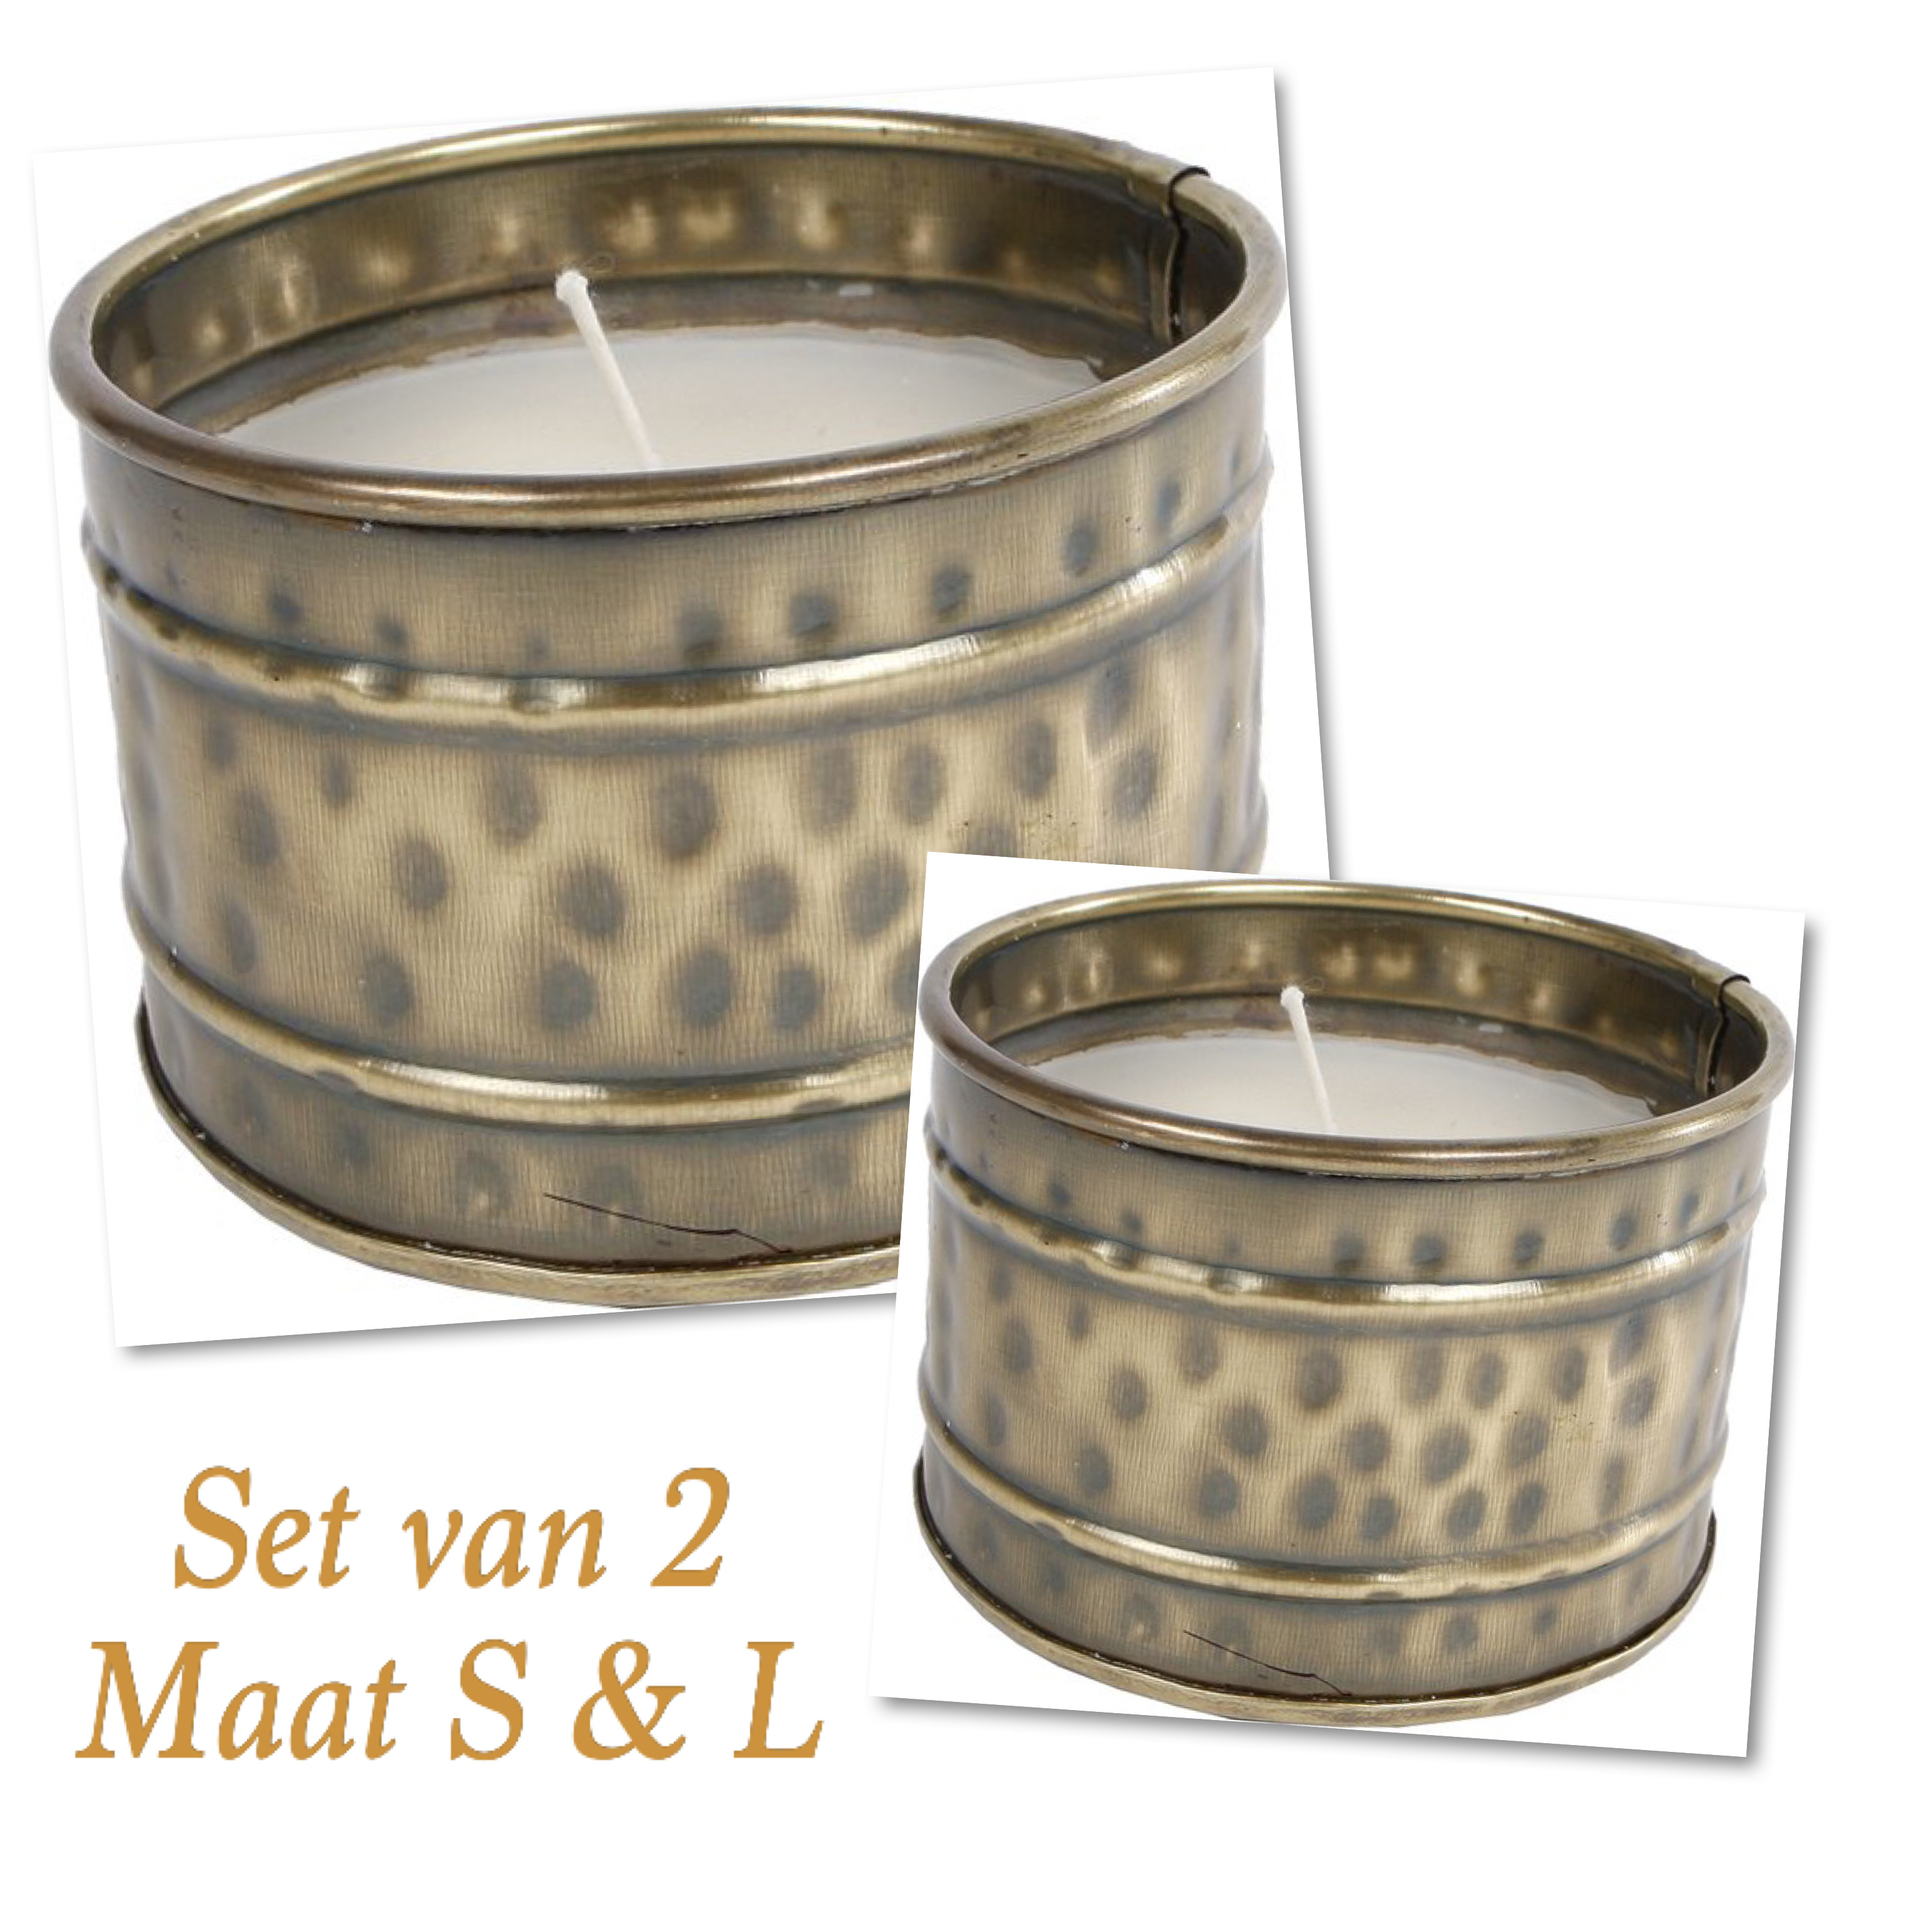 Set van 2 kaarsen maat S & L Kaars Ronald L oud messing beker metaal | 091165-4 | Gifts Amsterdam | Stoer & Sober Woons